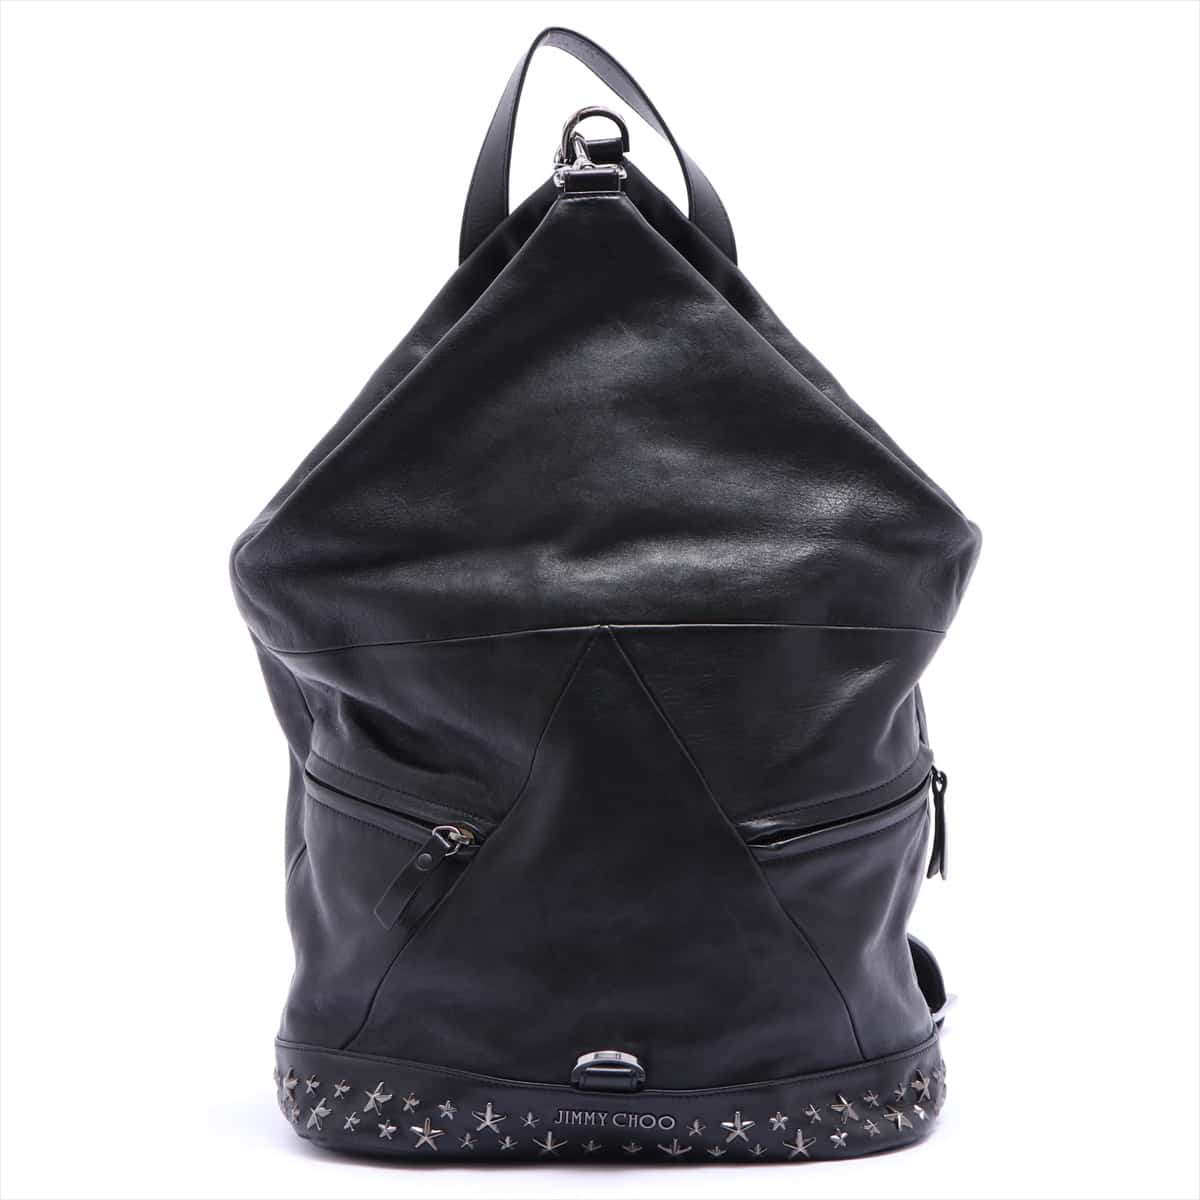 Jimmy Choo Star studs leather x studs Backpack Black